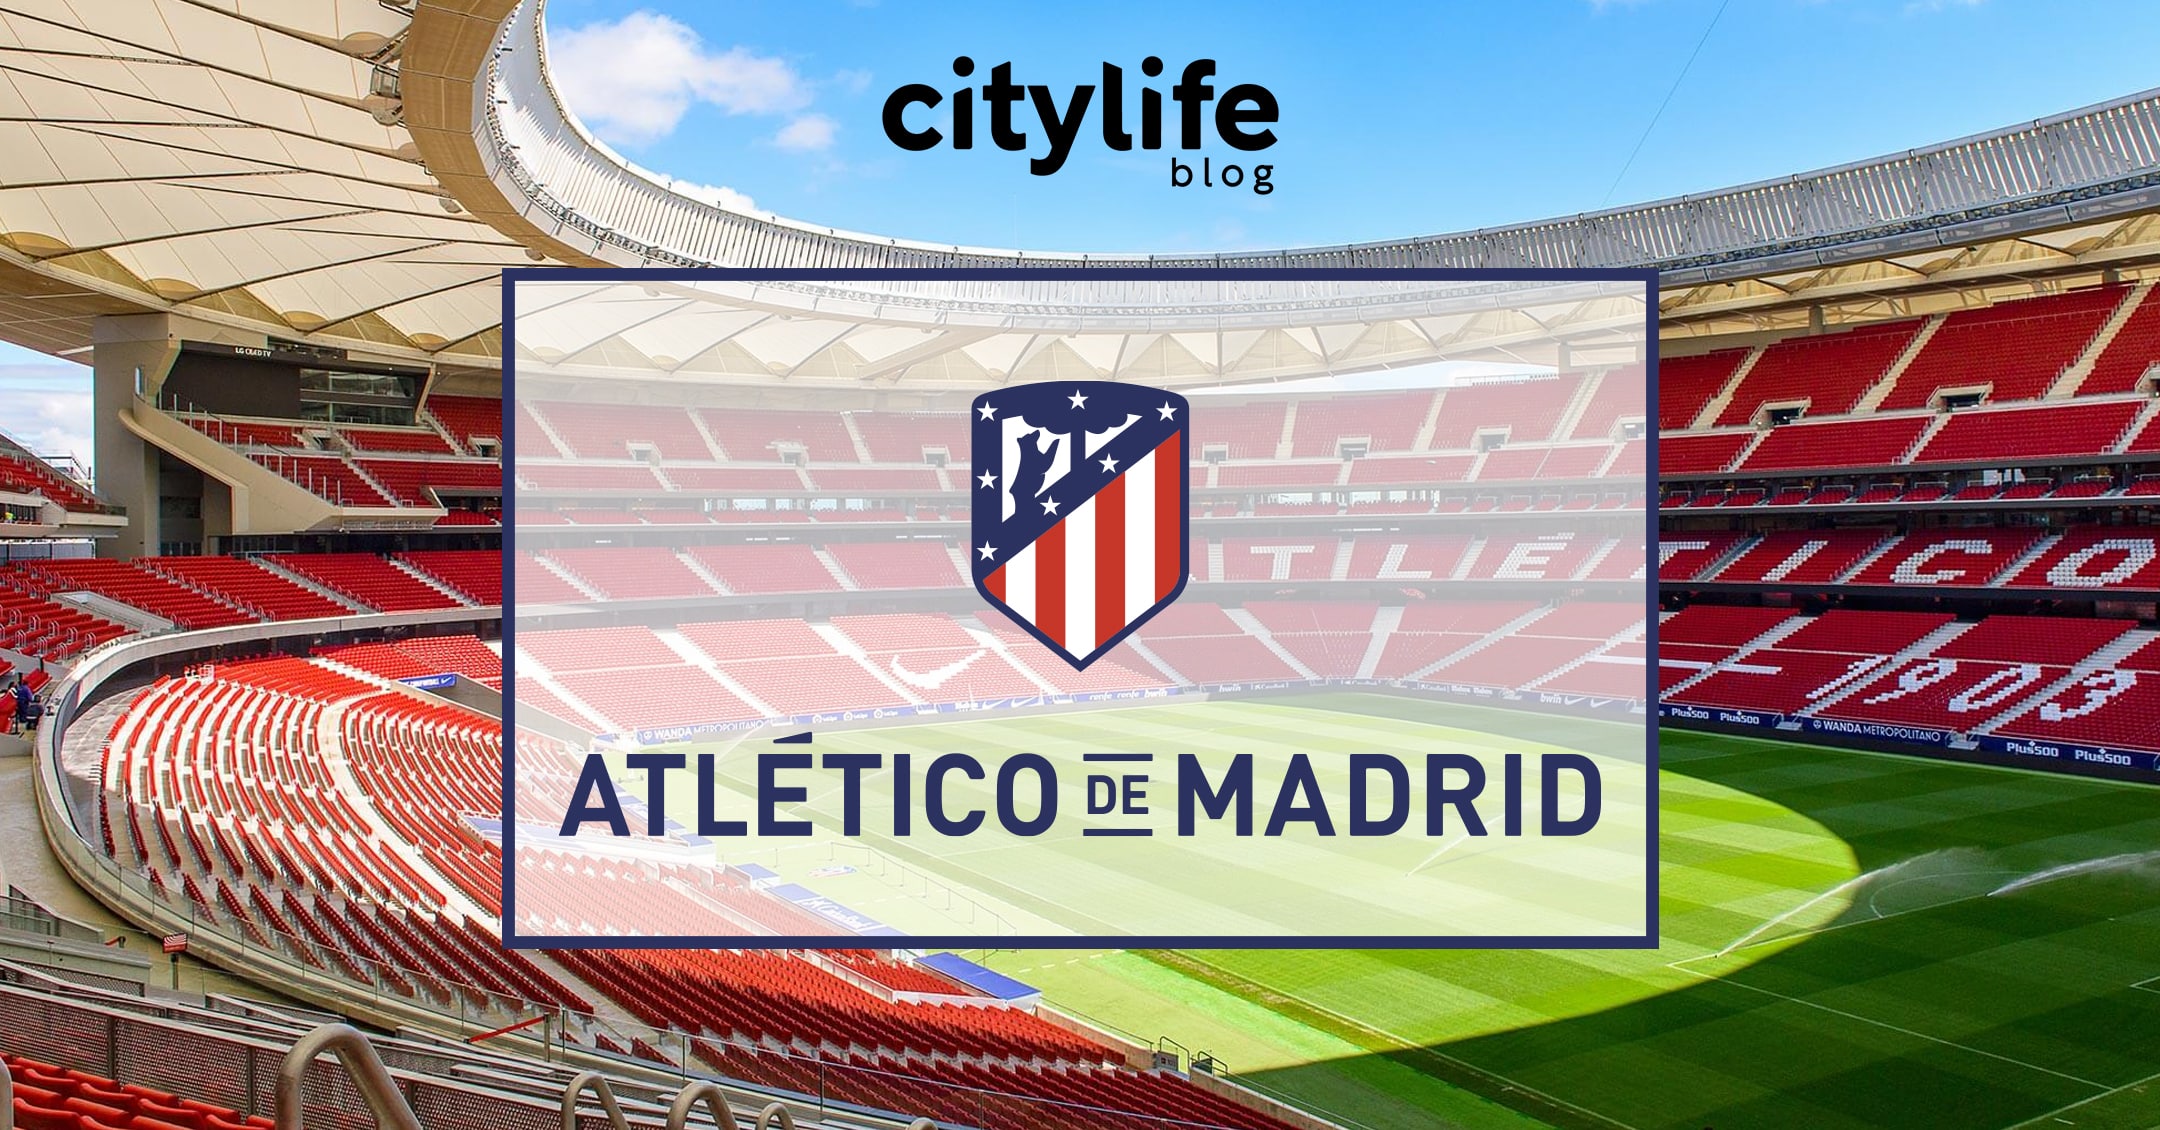 featured-image-atleti-atletico-citylife-madrid